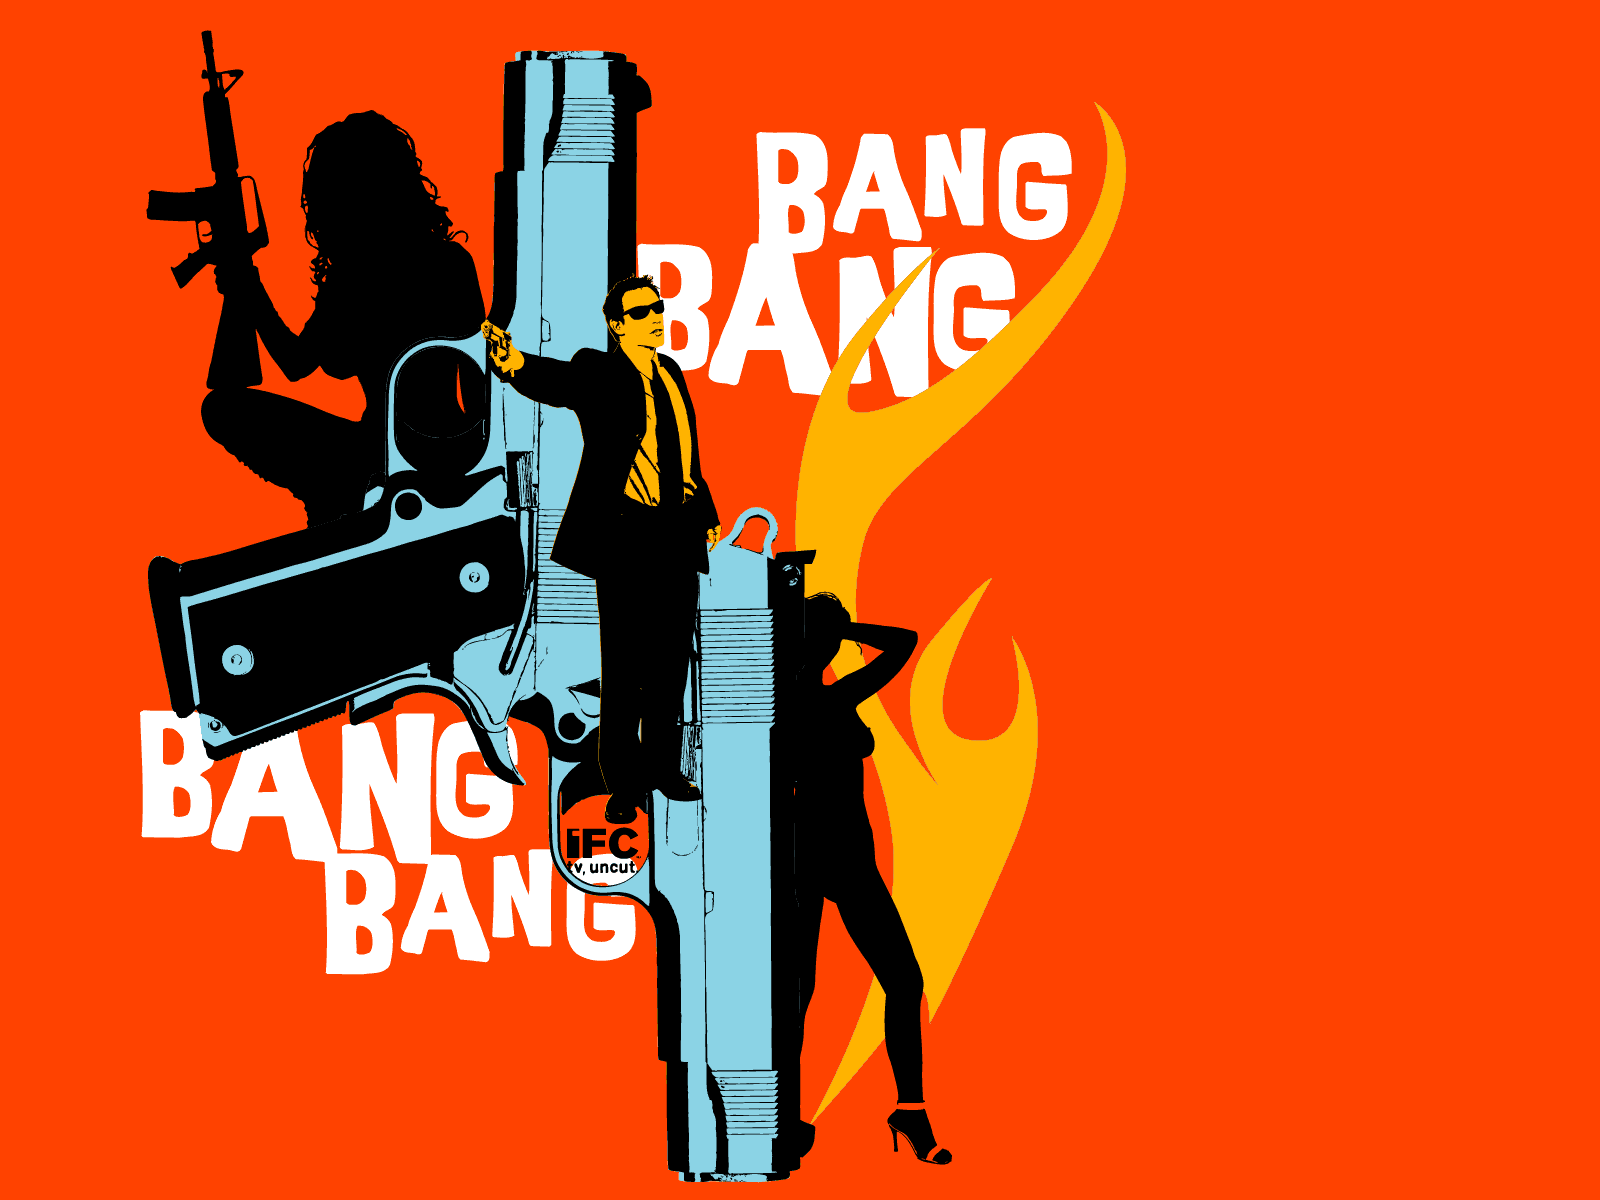 Blink bang bang born. Bang. Ban ban. G-ba. Bang картинка.